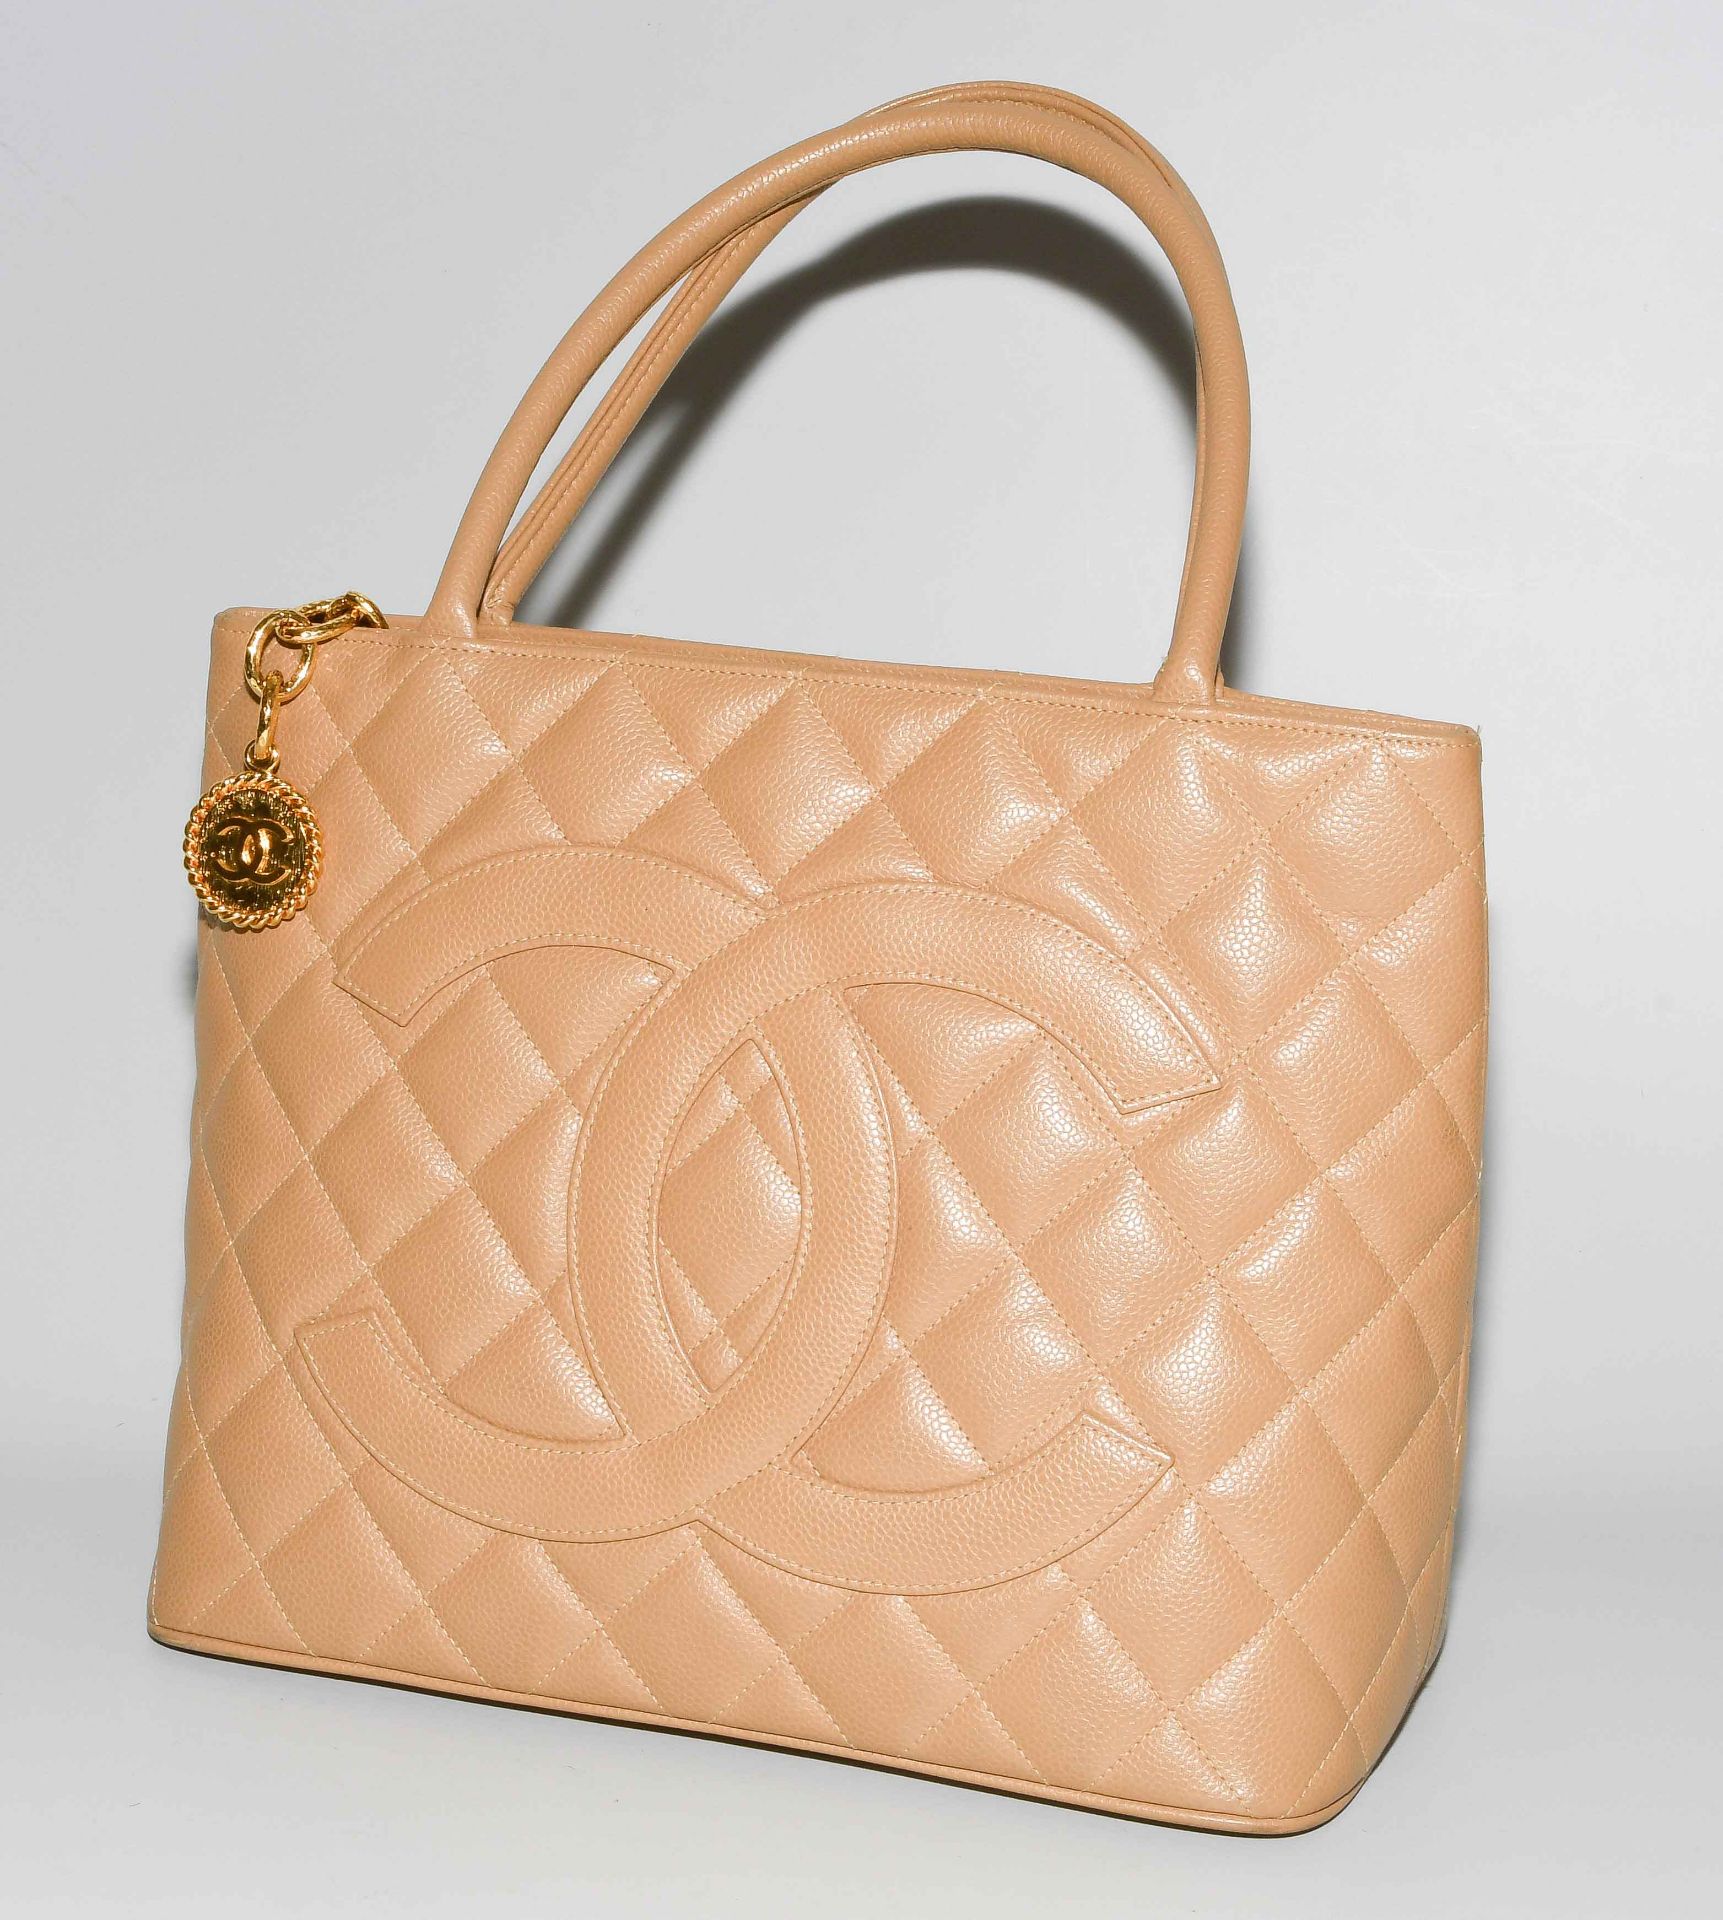 Chanel, Handtasche "Medaillon" - Bild 2 aus 10